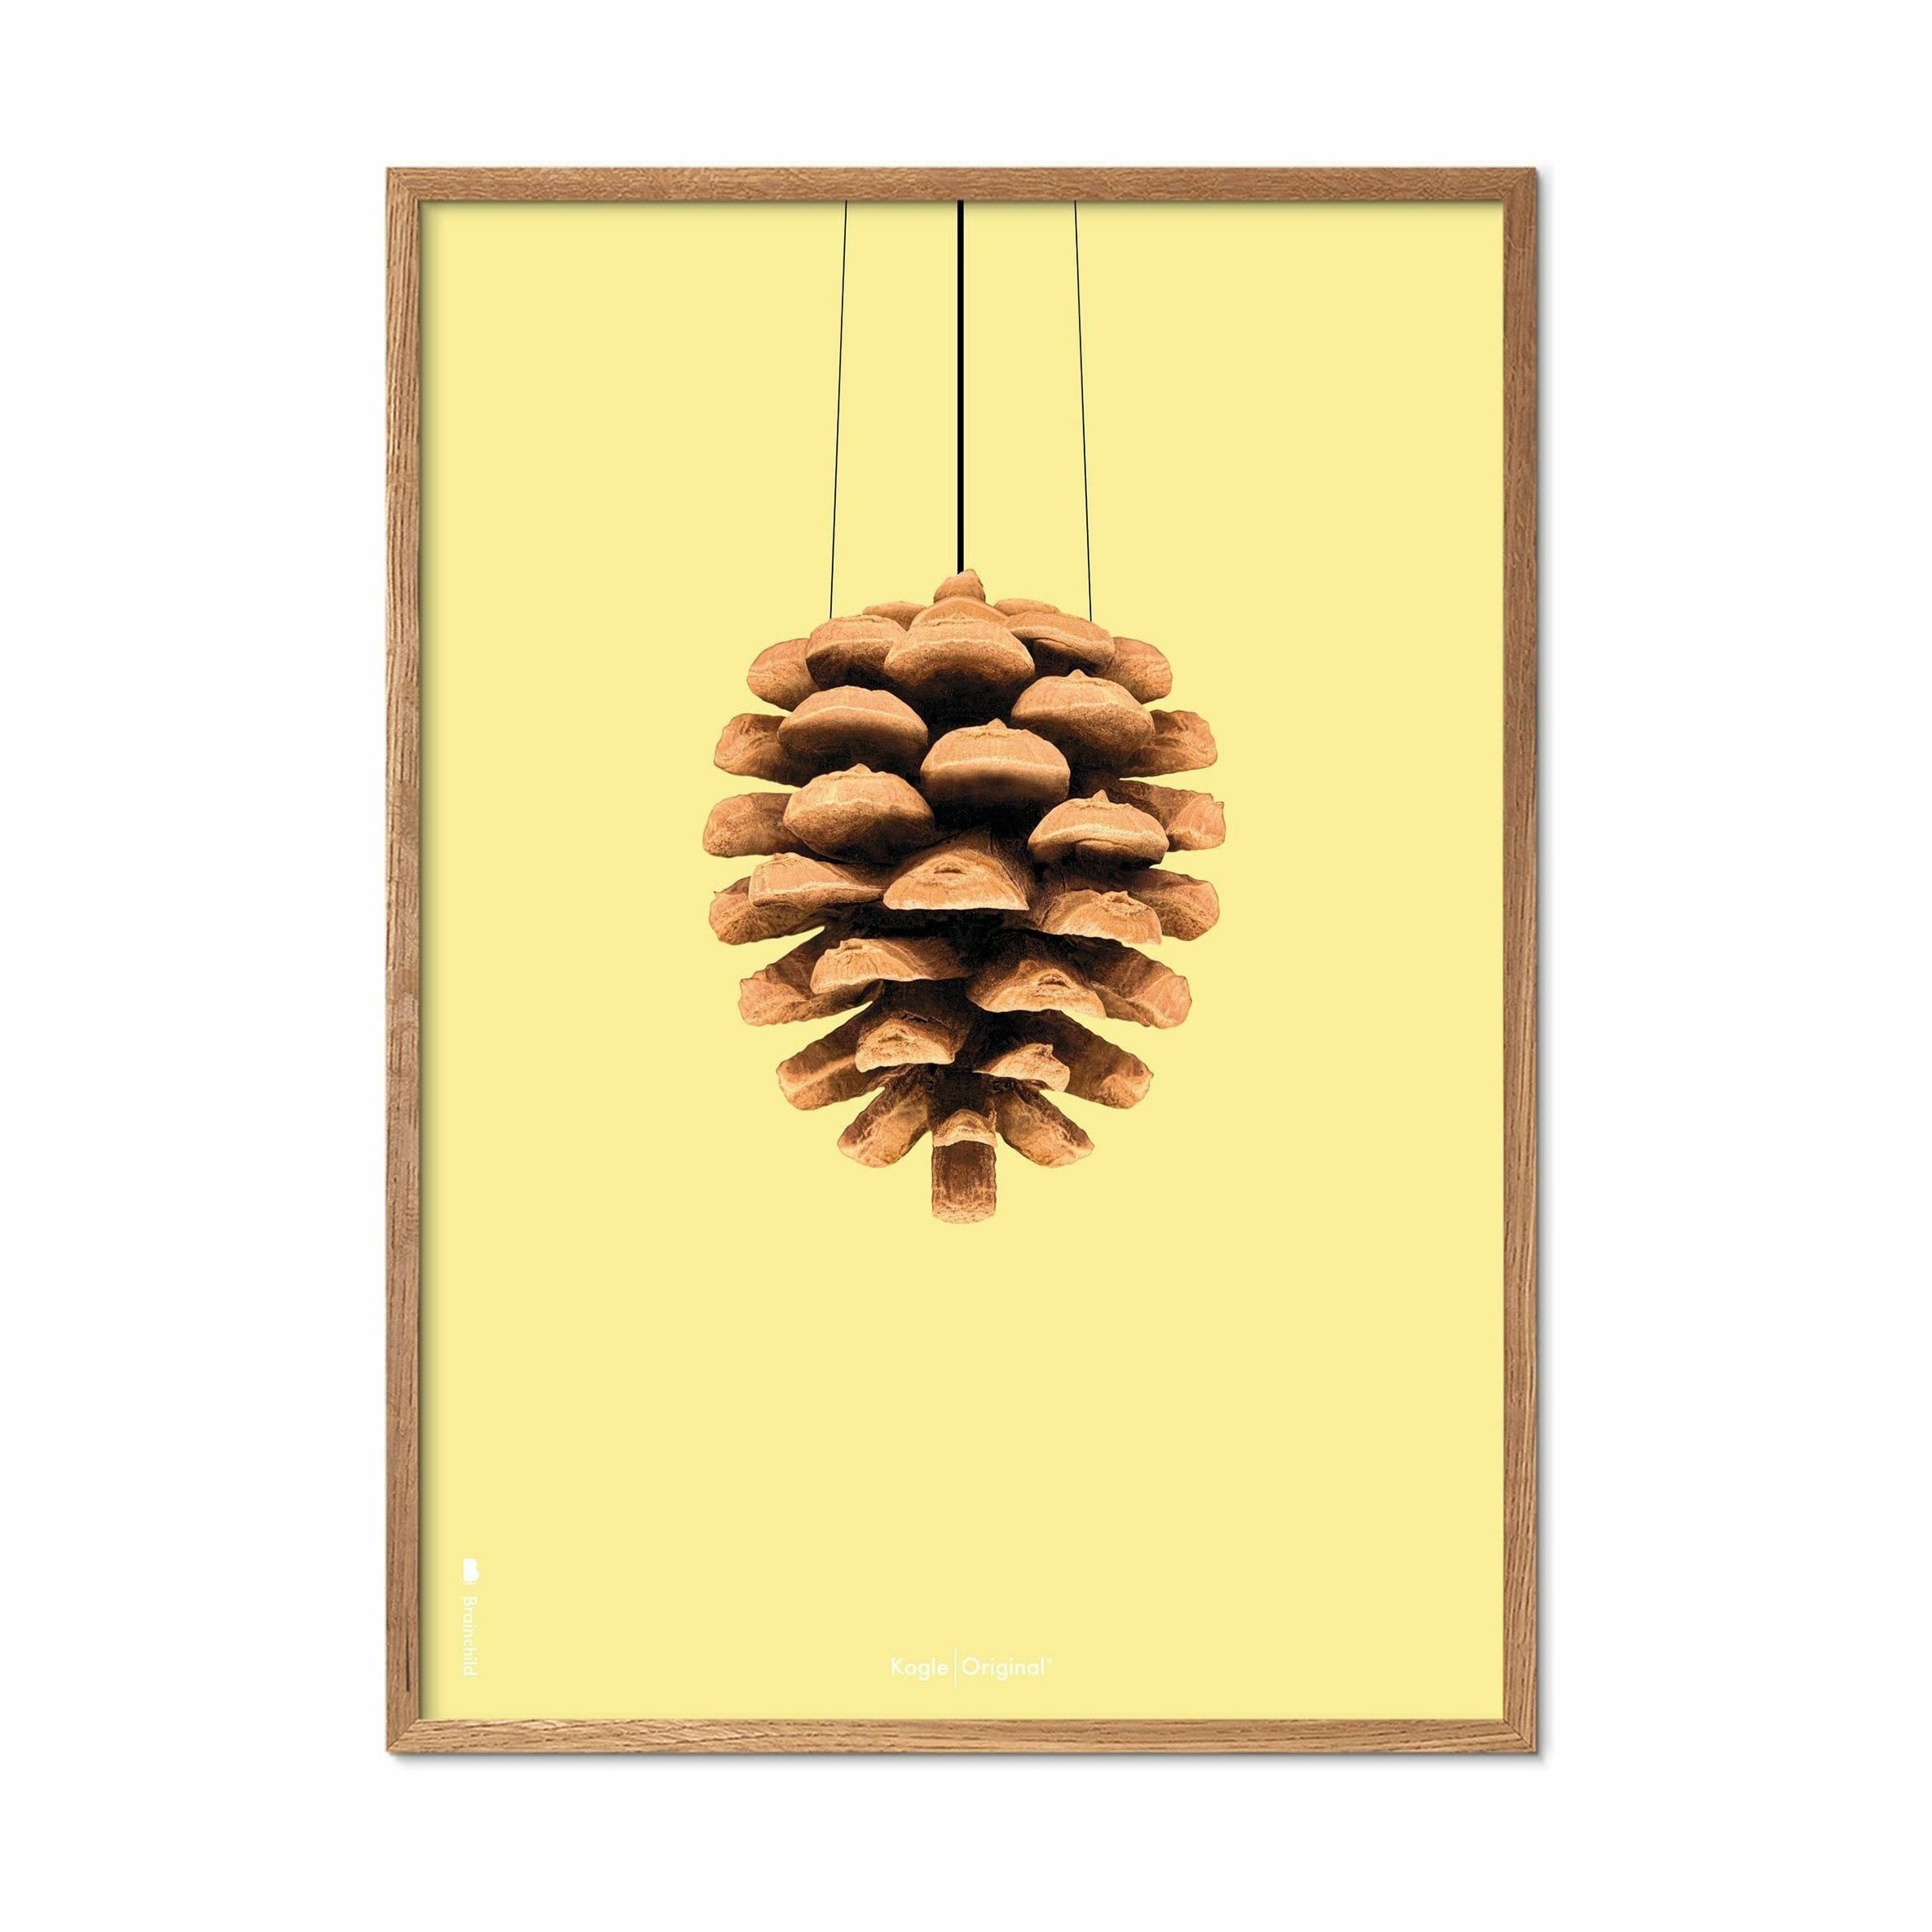 Póster clásico de cono de pino de creación, marco hecho de madera clara 50x70 cm, fondo amarillo